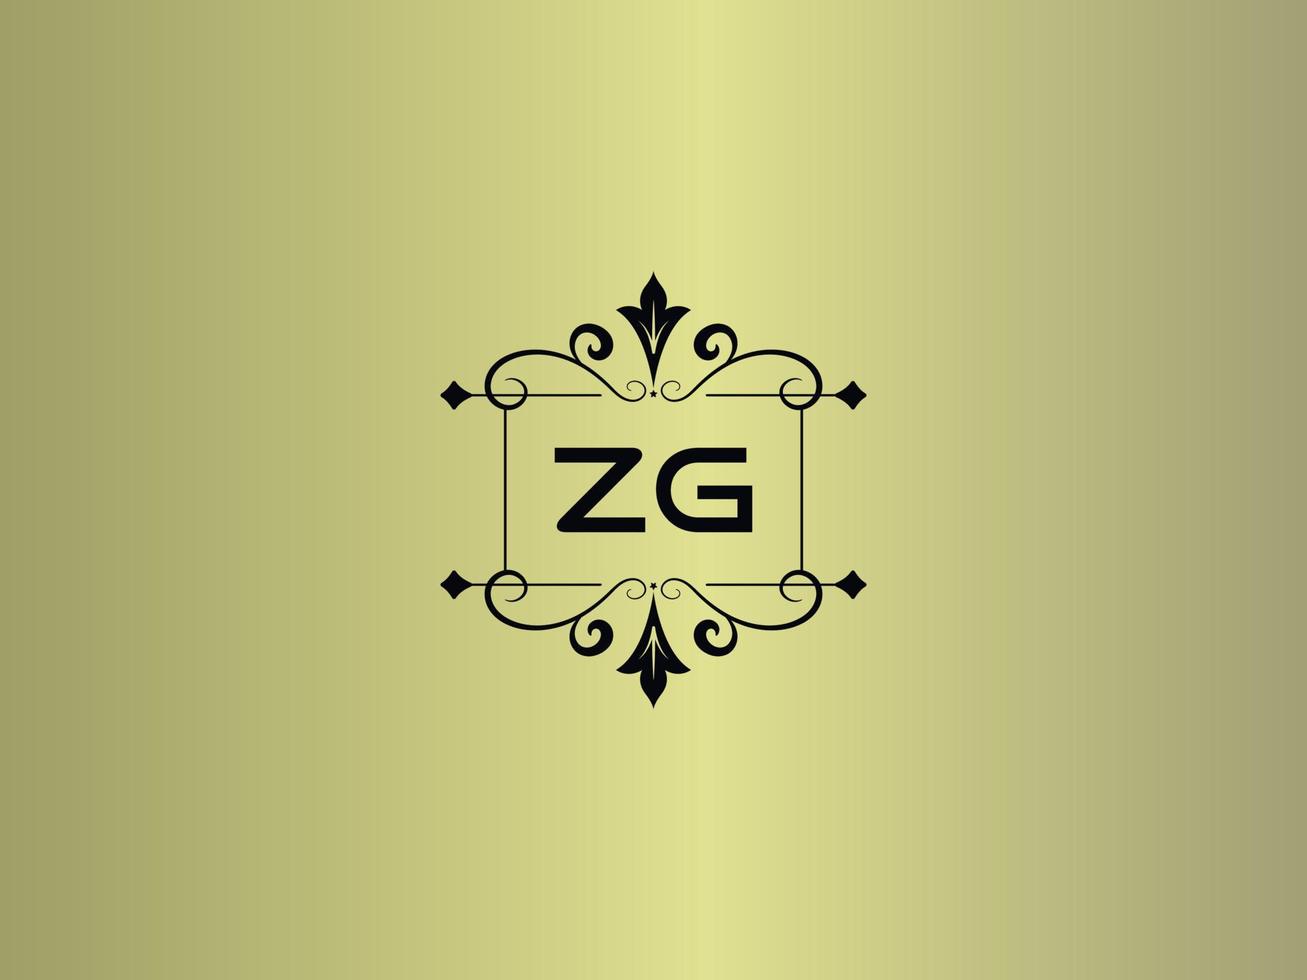 creativo zg logo Immagine, premio zg lusso lettera design vettore